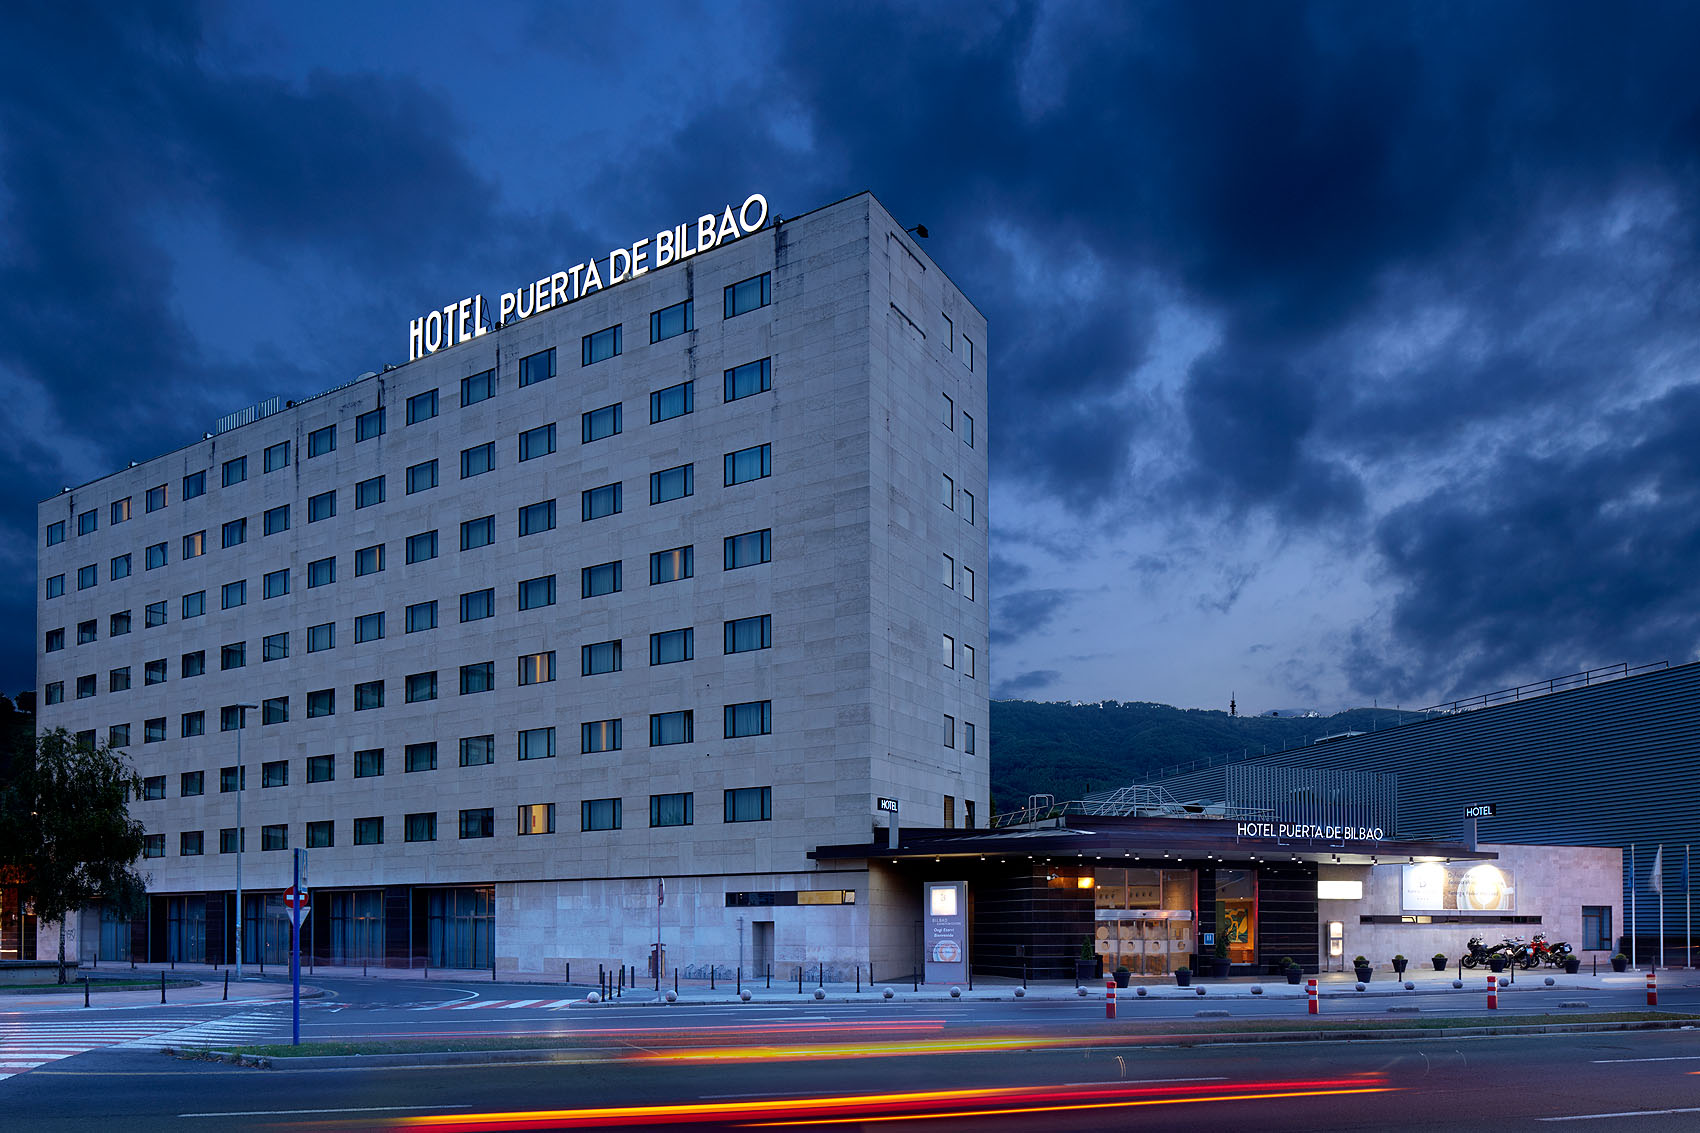 Hotel Puerta de Bilbao - Iñaki Caperochipi - Fotografía